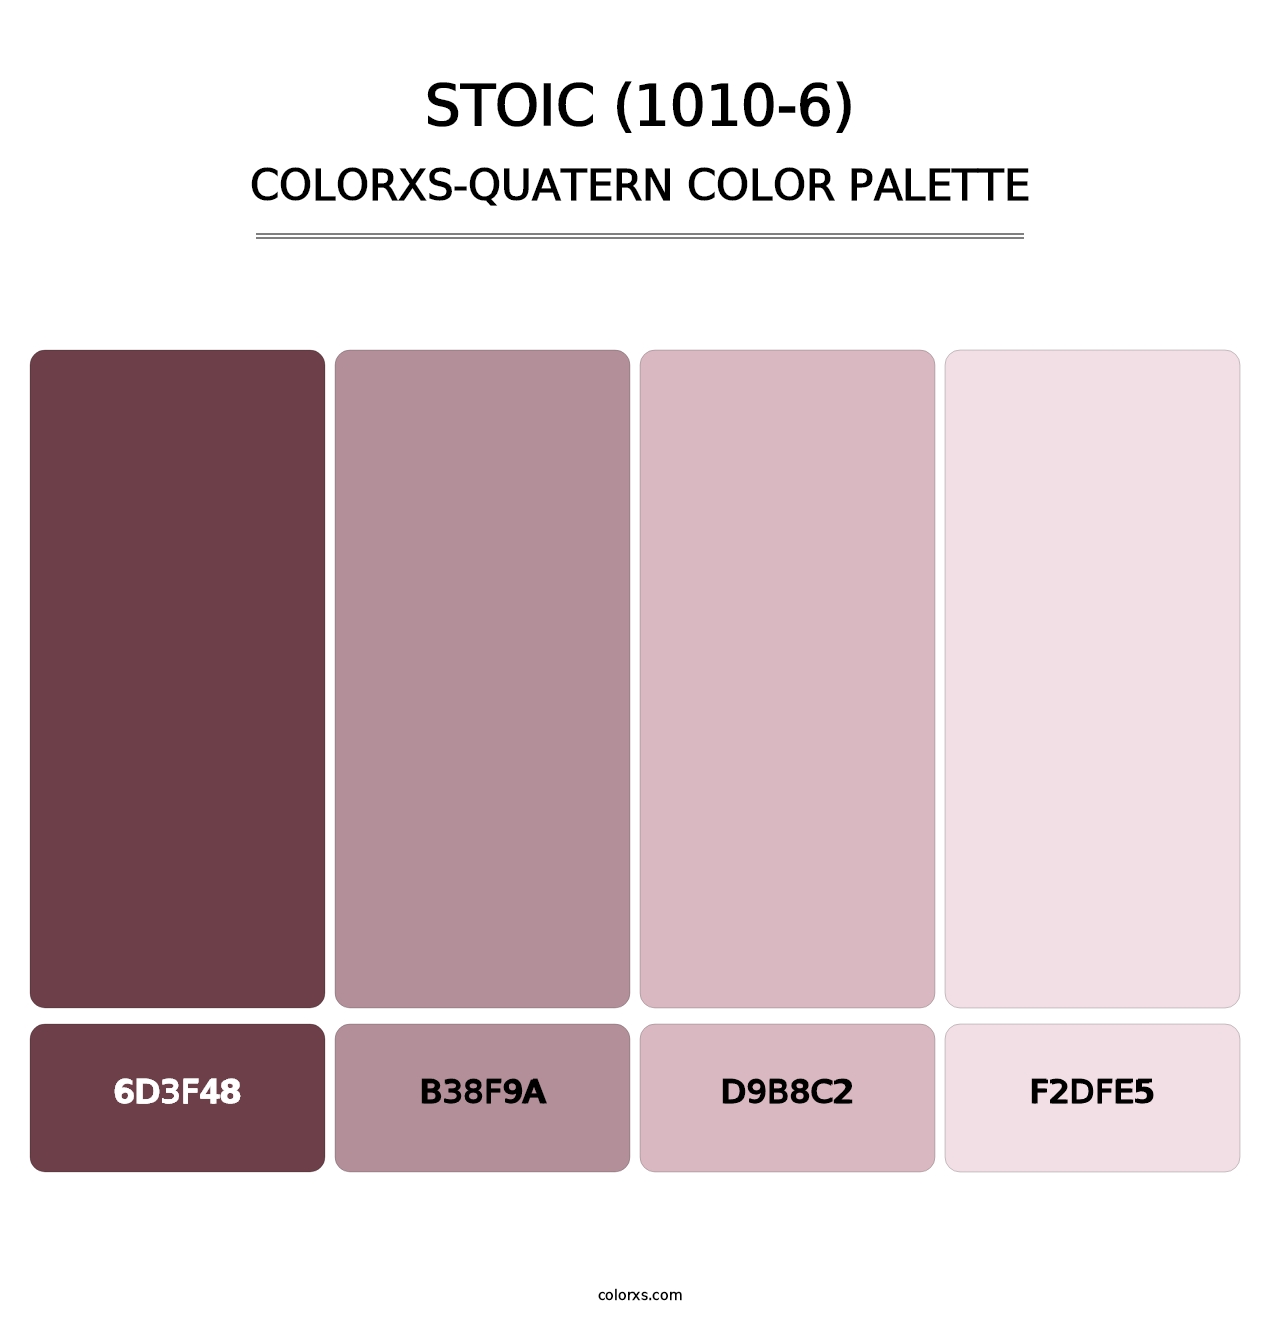 Stoic (1010-6) - Colorxs Quatern Palette